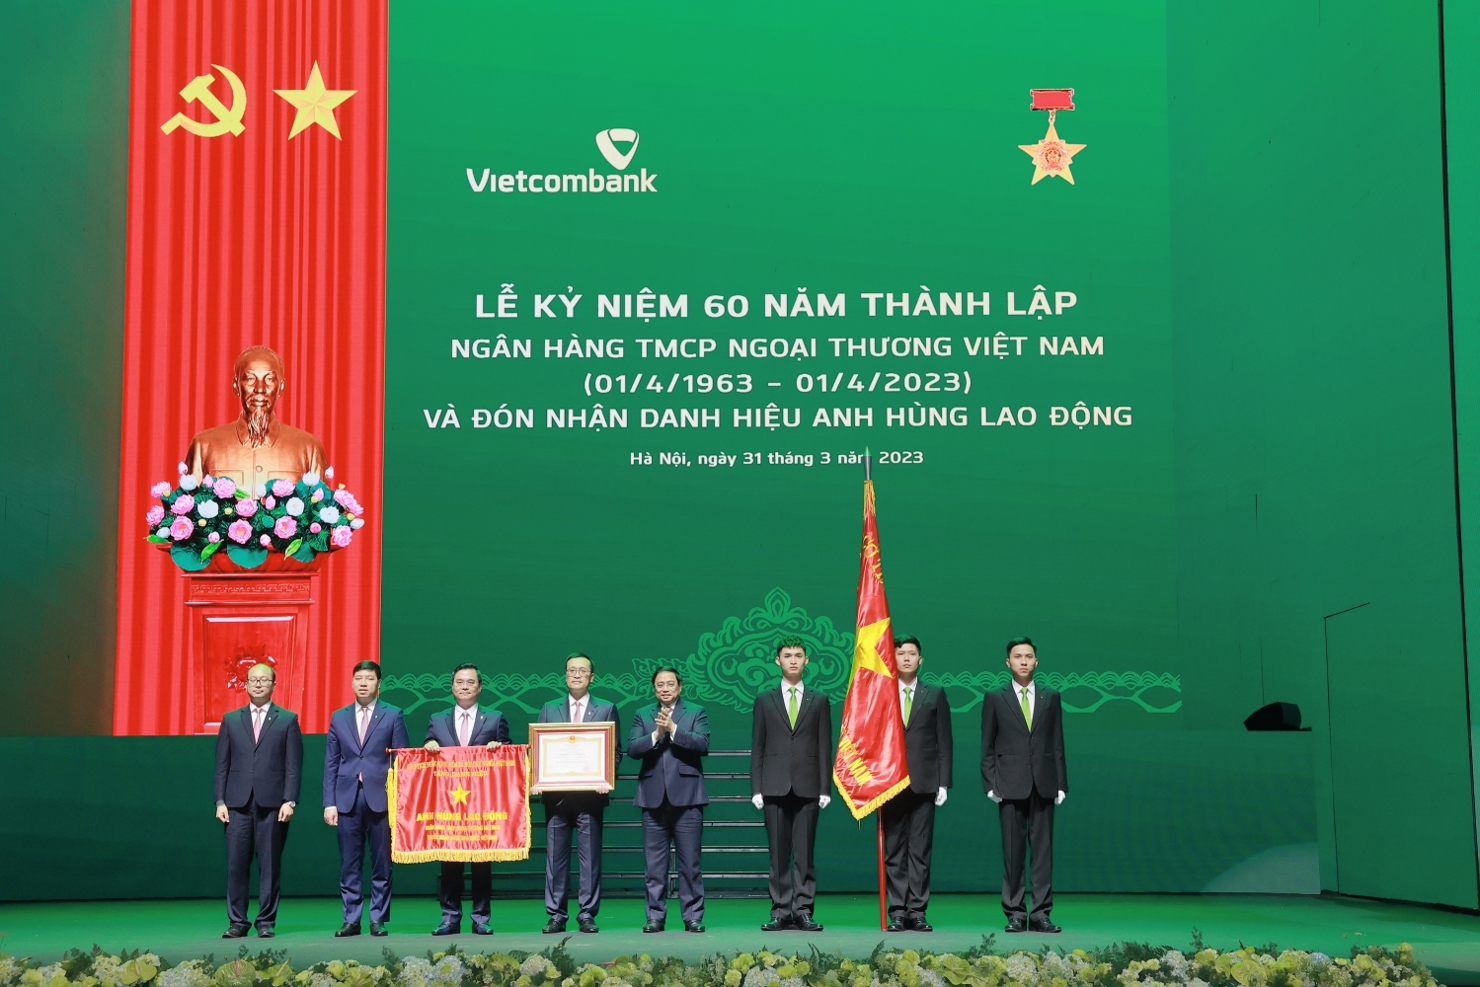 Thủ tướng Chính phủ Phạm Minh Chính trao tặng Bằng khen và cờ danh hiệu Anh hùng Lao động cho Ban lãnh đạo Vietcombank